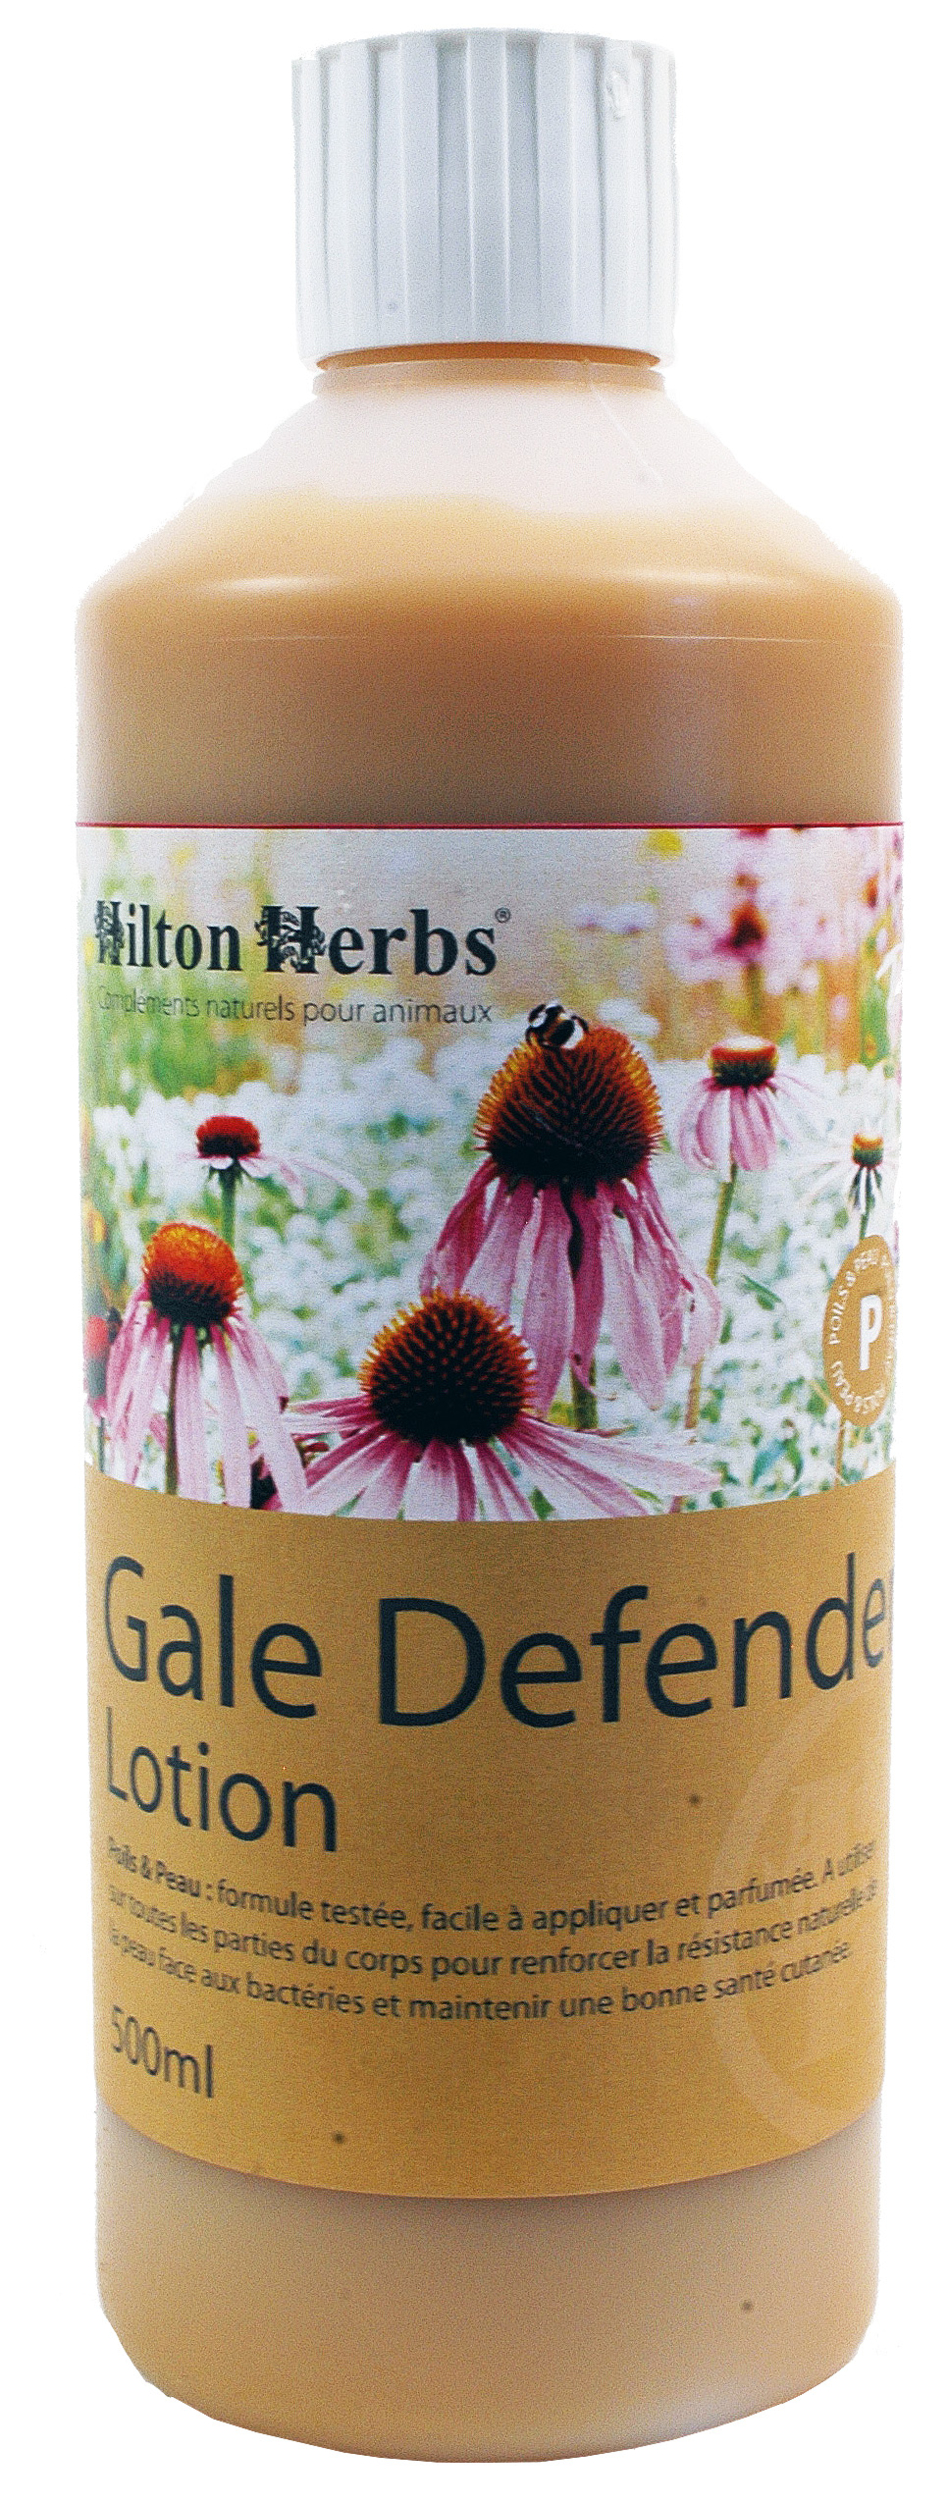 gale-defender-lotion-gale-de-boue-hilton-herbs